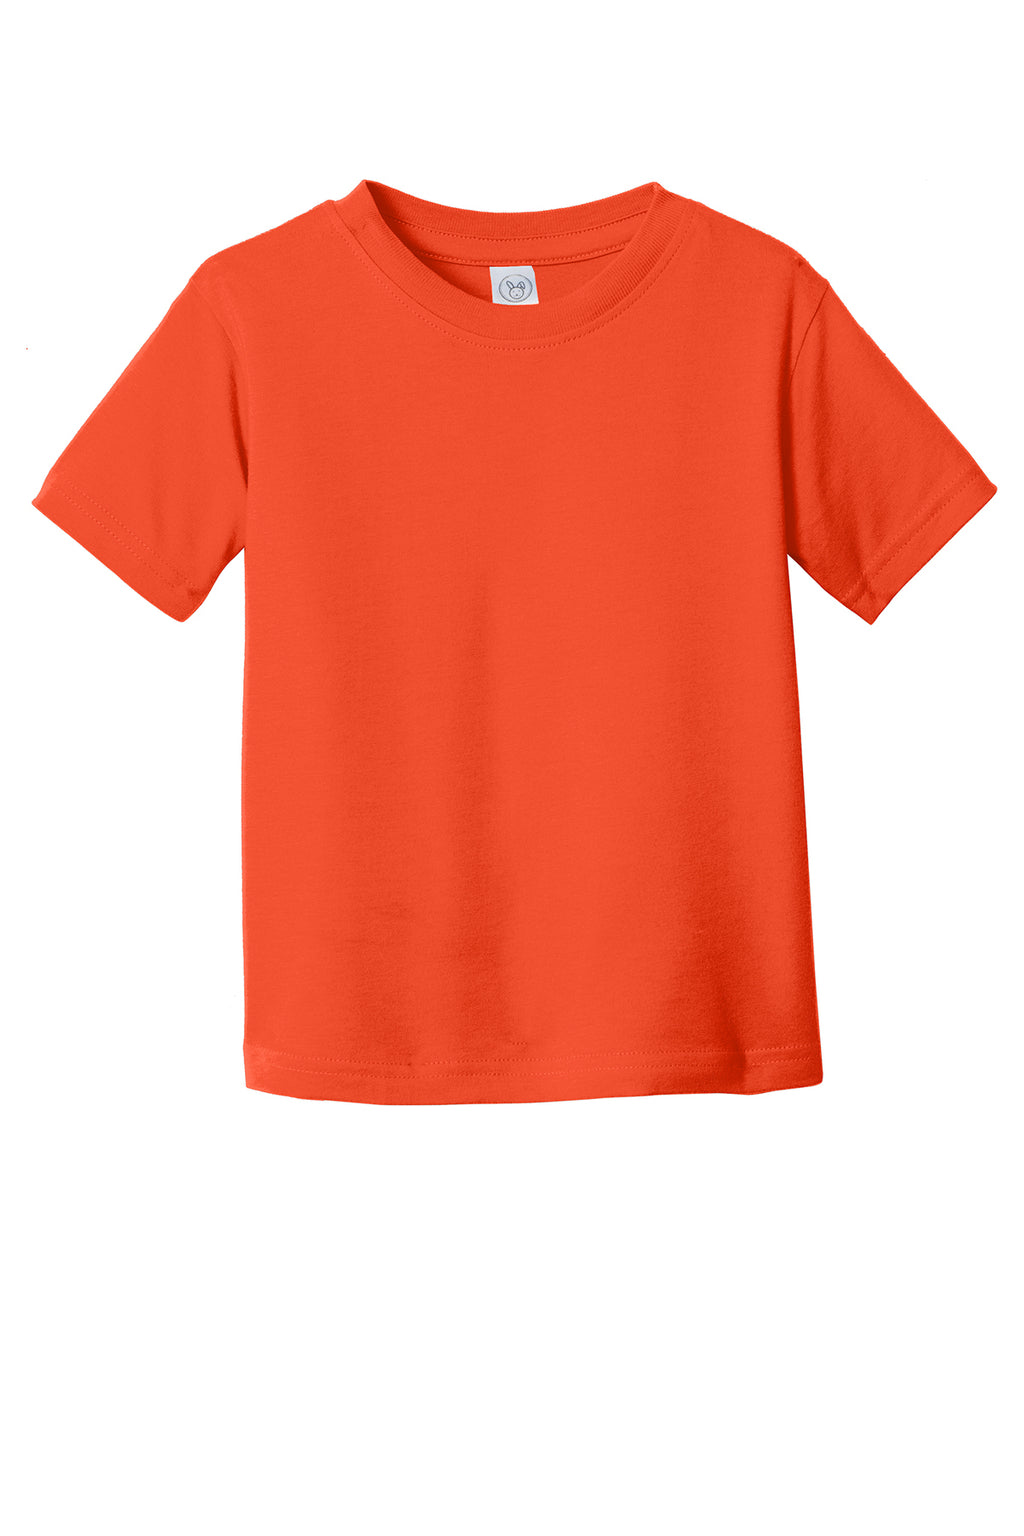 Rabbit Skins Toddler Cotton Short Sleeve Shirts Orange